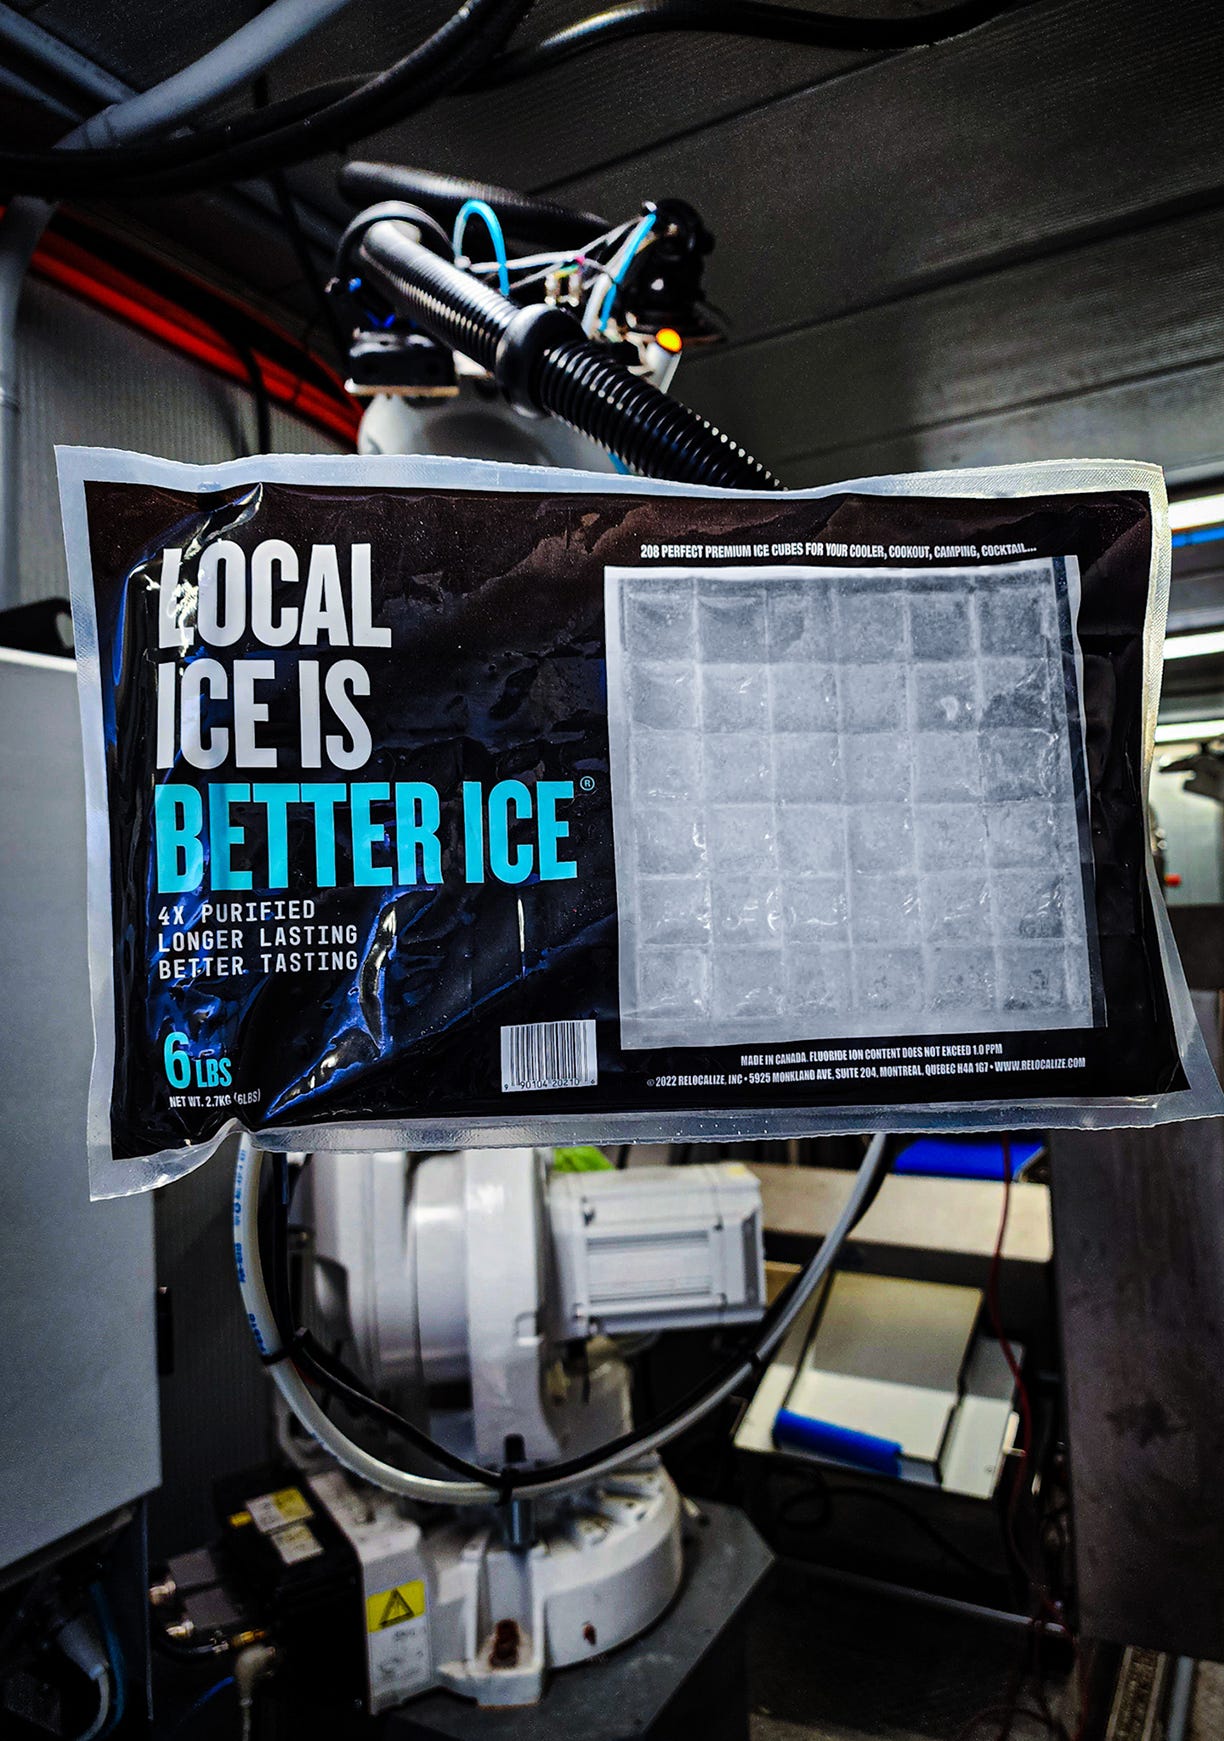 Autonomous ice production by robots